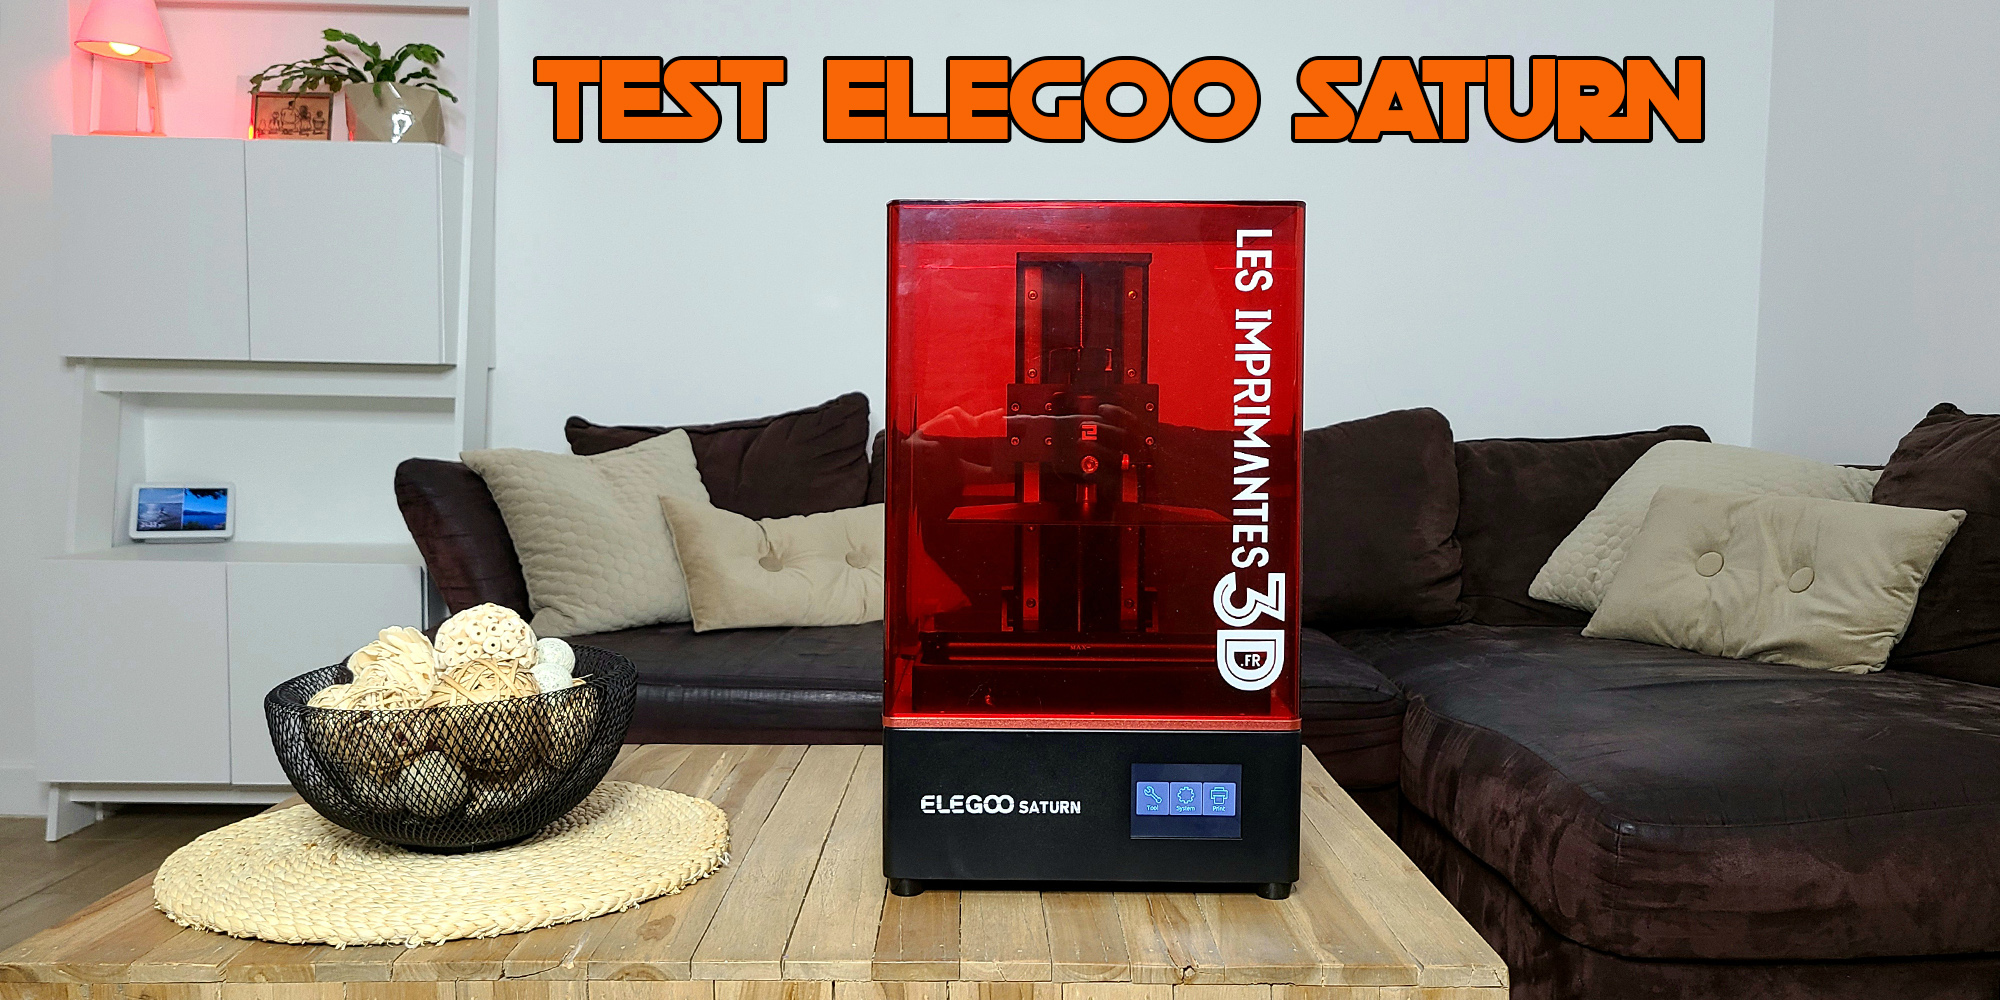 test-elegoo-saturn-review.jpg